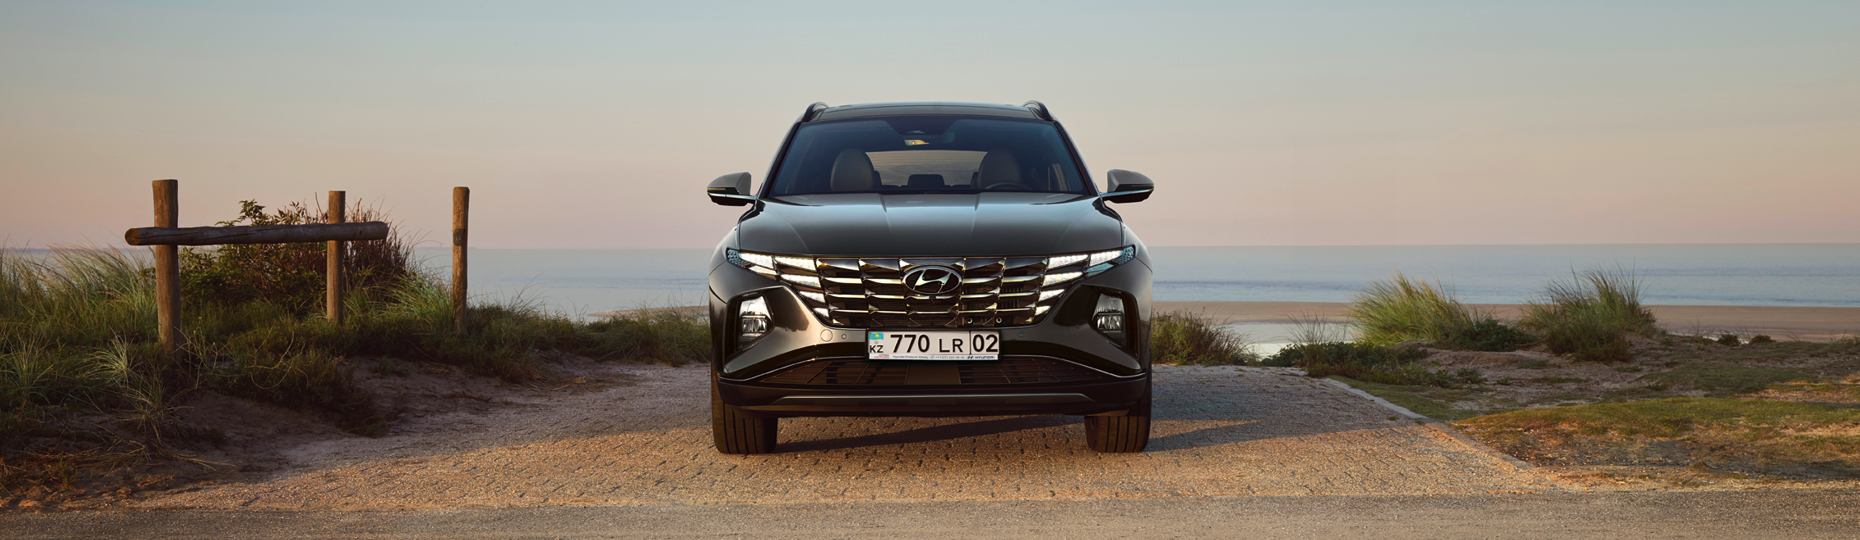 Hyundai Tucson техникалық сипаттамалары | Астанадағы ресми дилер